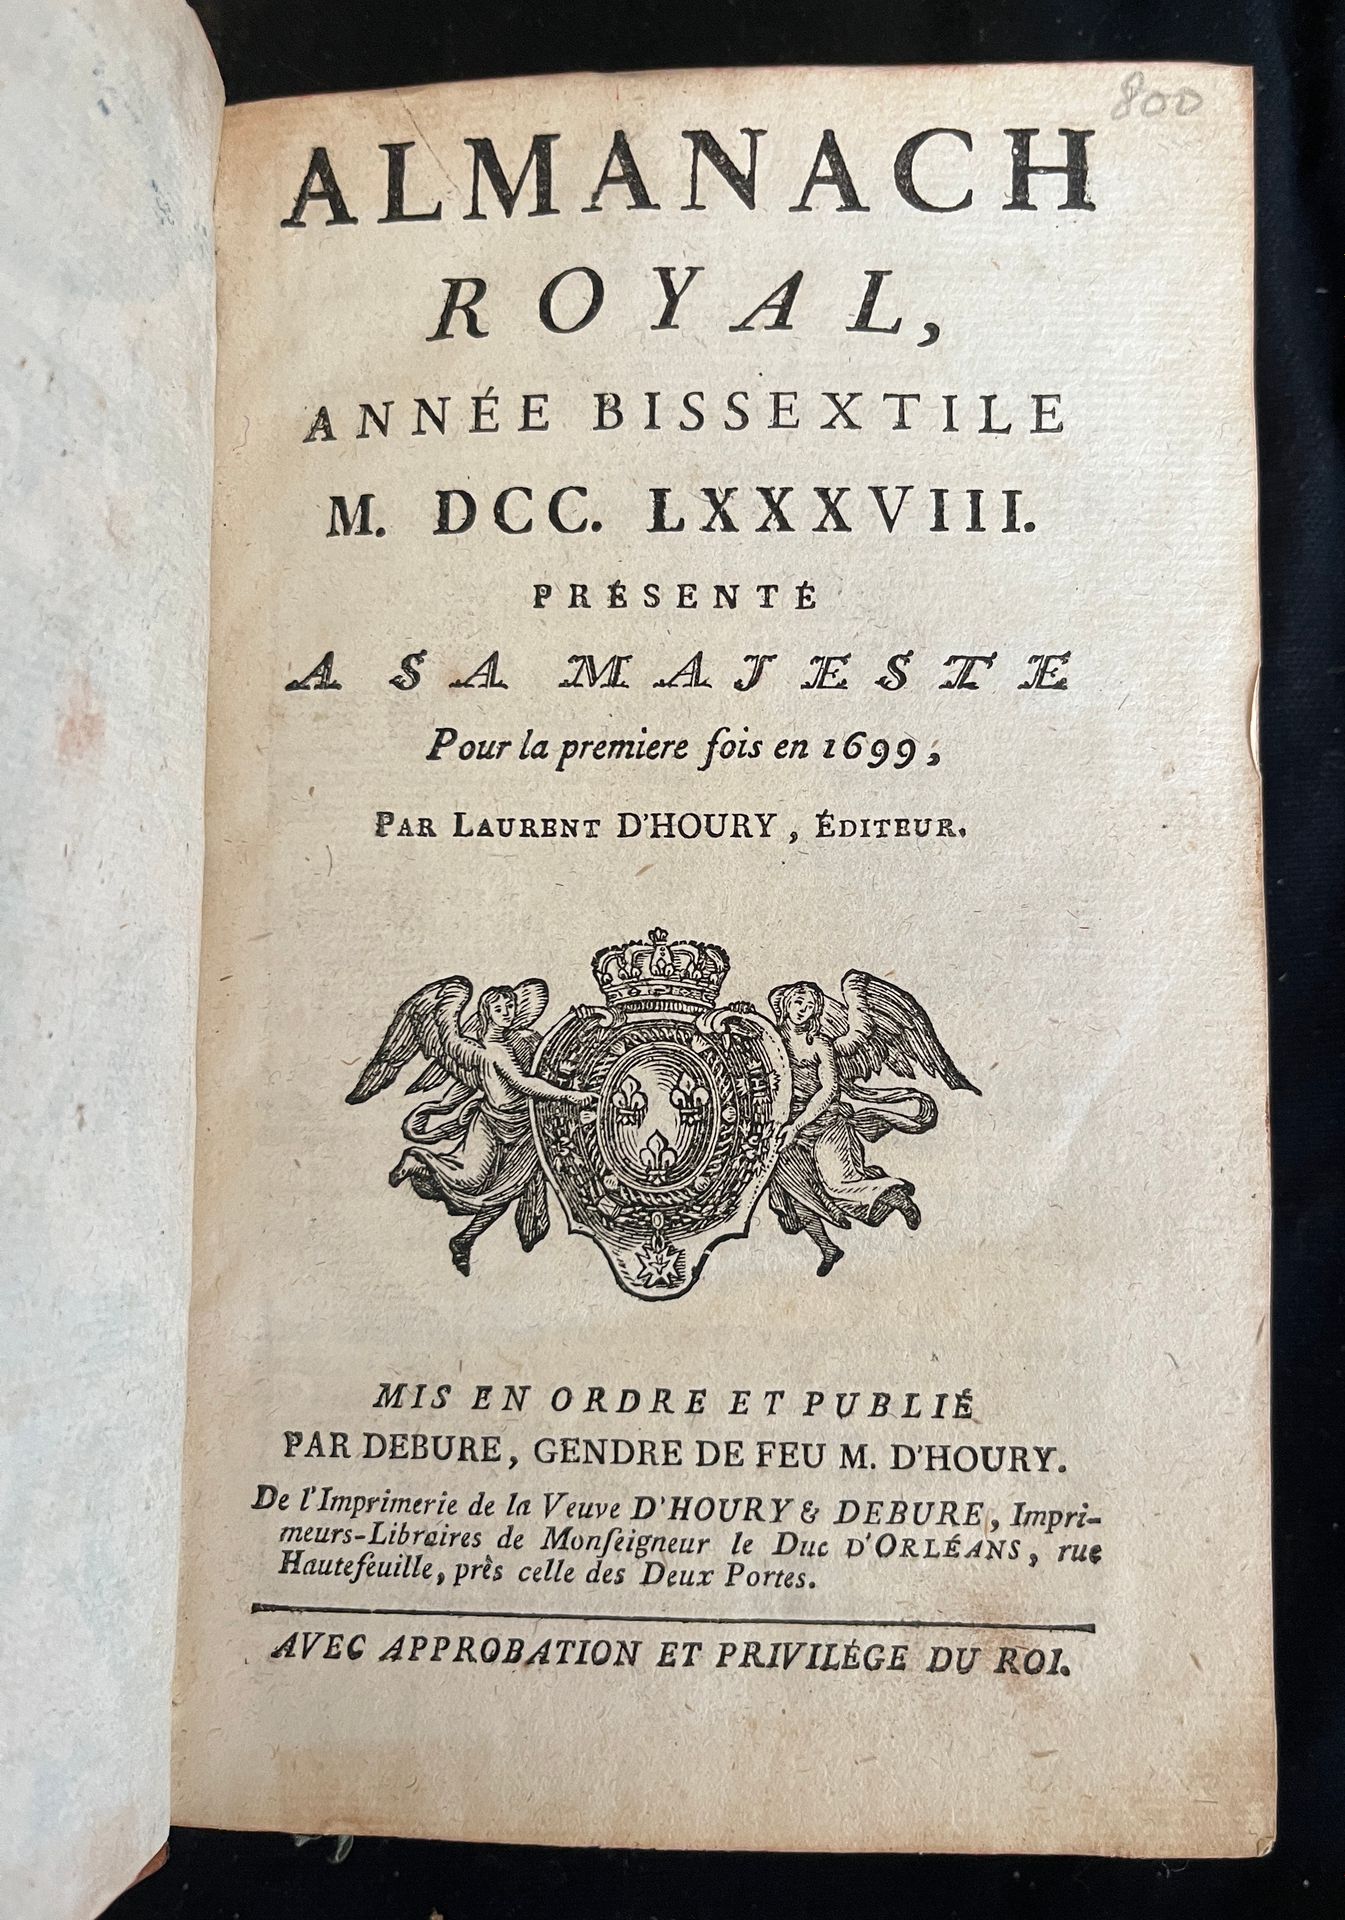 Null [ALMANACH]
Almanach royal pour l'an bissextile MDCCLXXXVIII. Paris, chez d'&hellip;